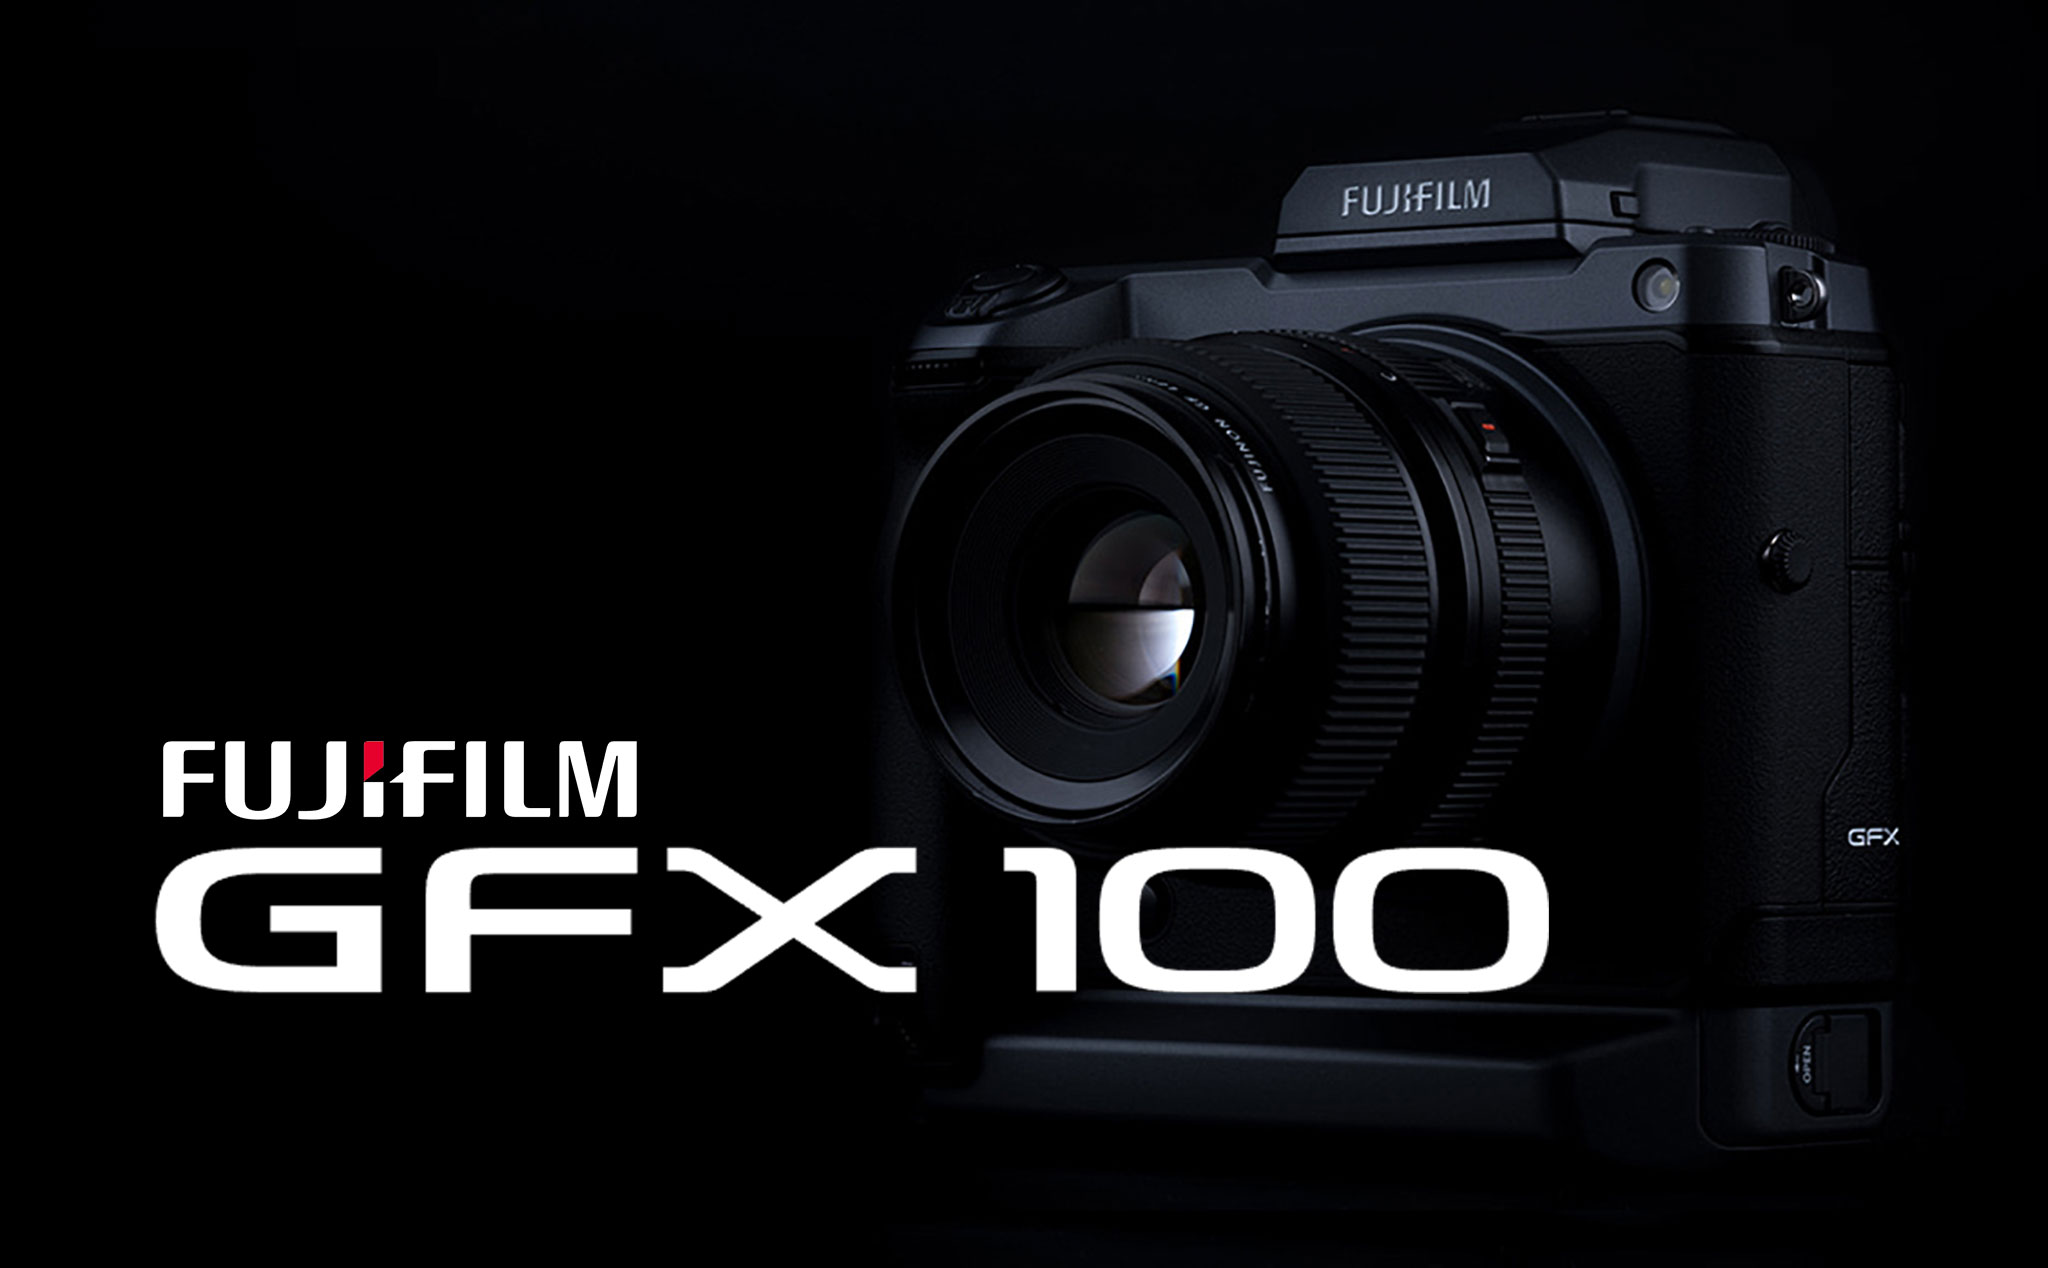 Fujifilm giới thiệu máy GFX100: 102MP, 4K, chống rung 5 trục 5.5 stops, lấy nét theo pha, giá 10000$